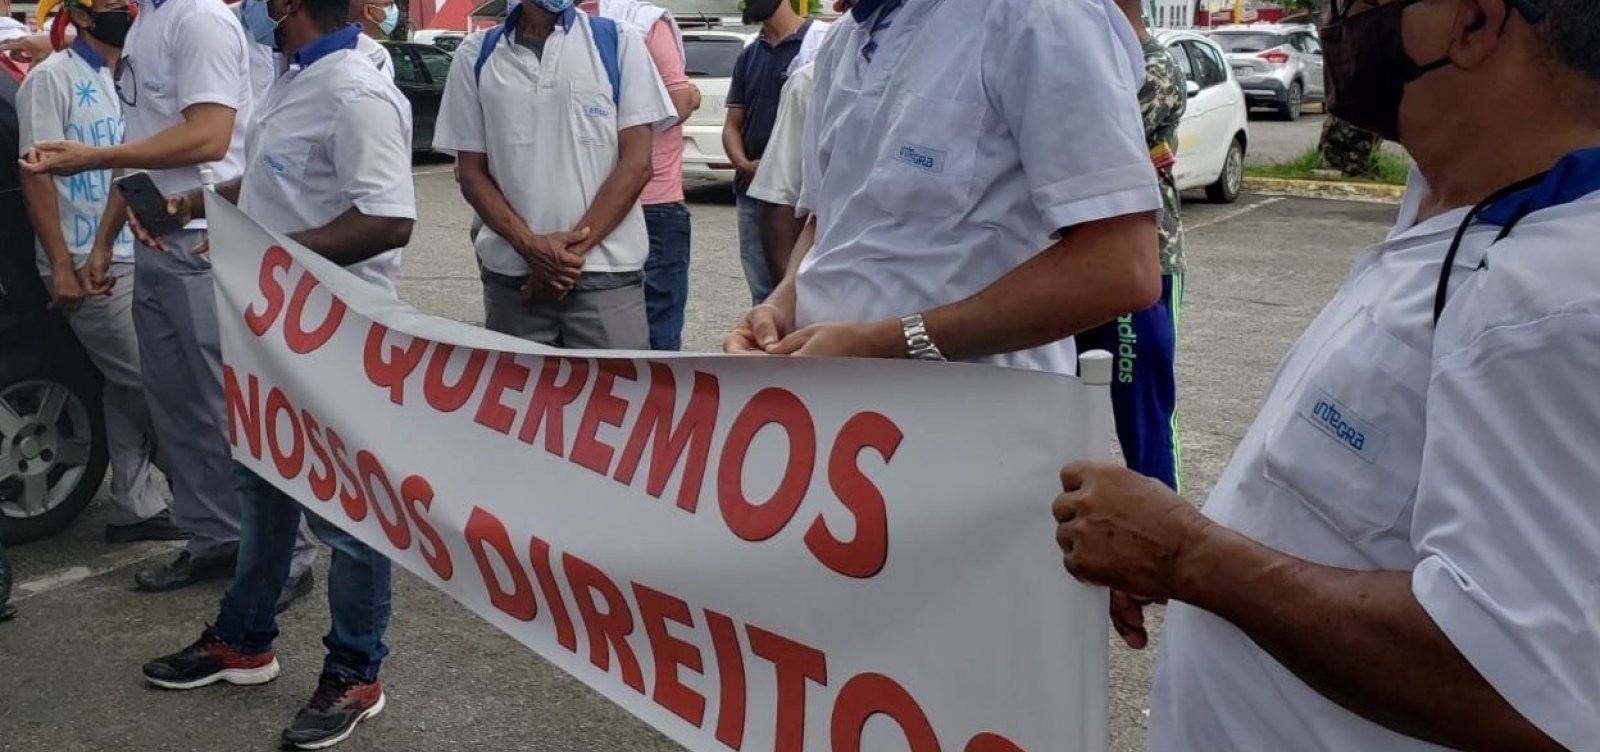 Impasse na venda de terrenos atravanca acordo entre rodoviários e prefeitura de Salvador